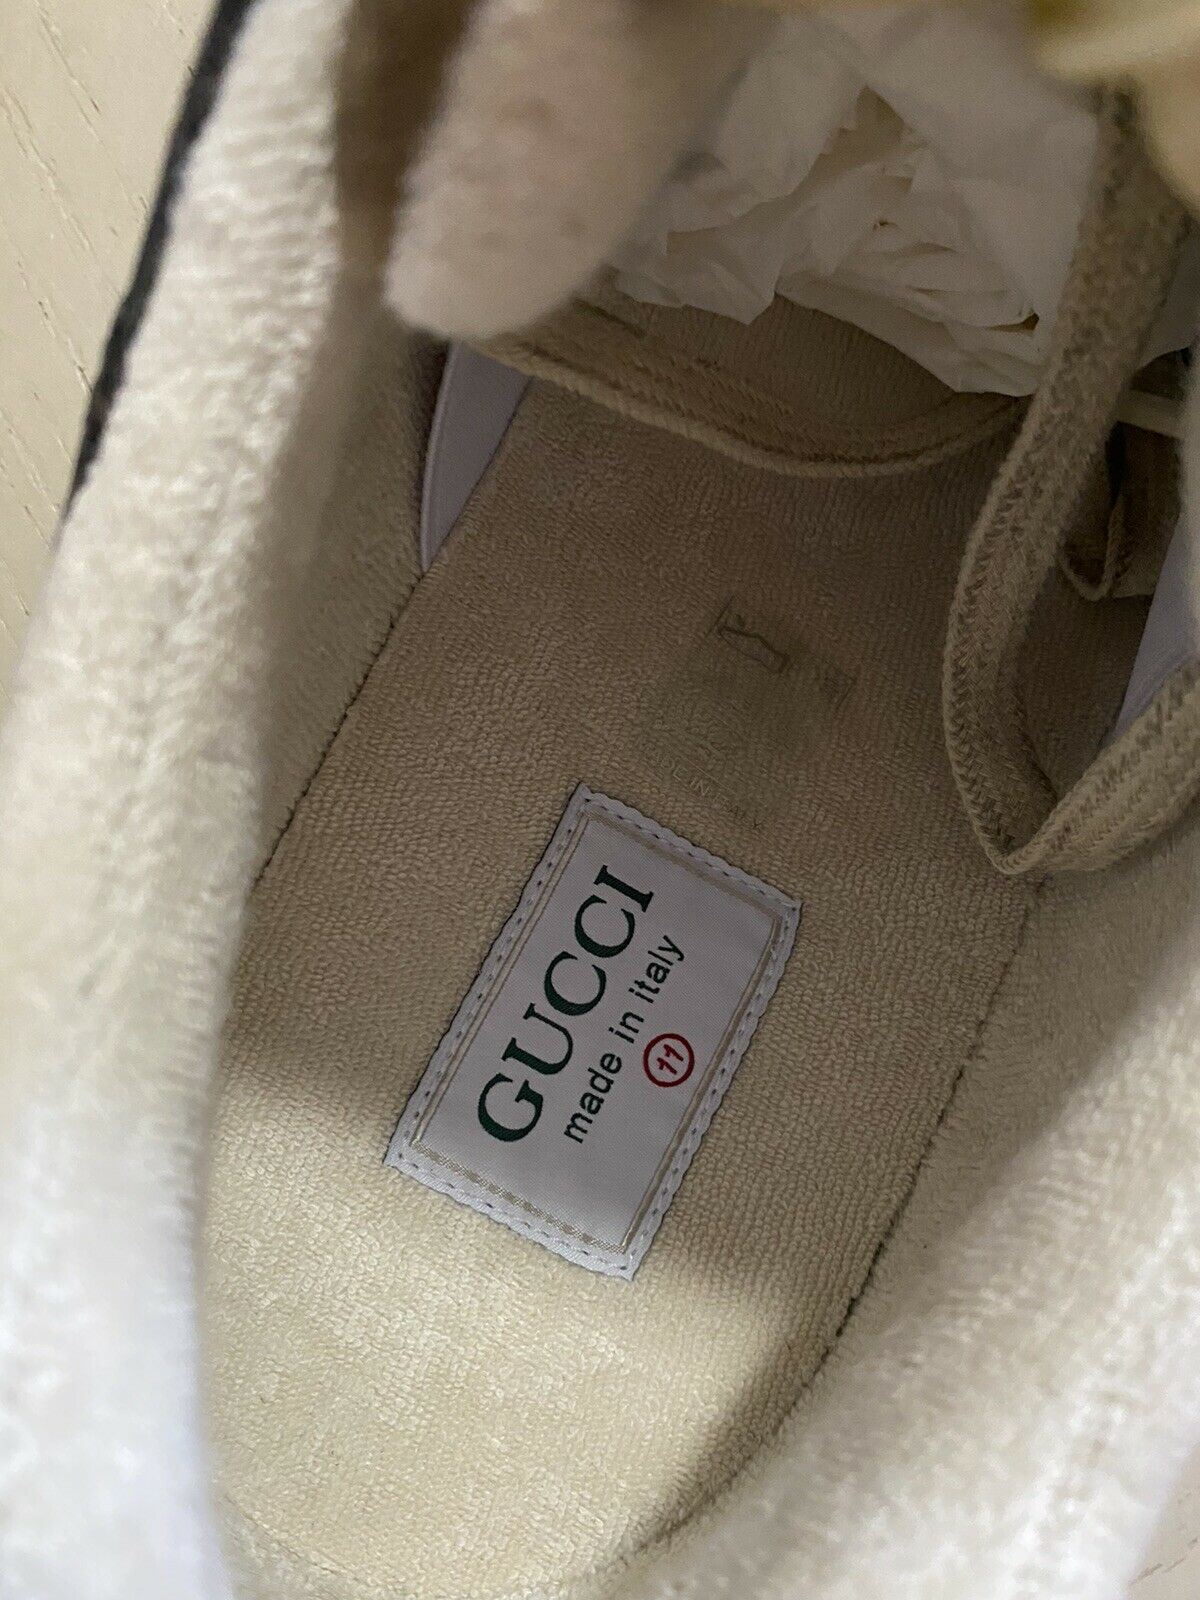 Новые мужские кожаные кроссовки Gucci коричневого/серого/бежевого цвета 9 США (8,5G Великобритания) Италия